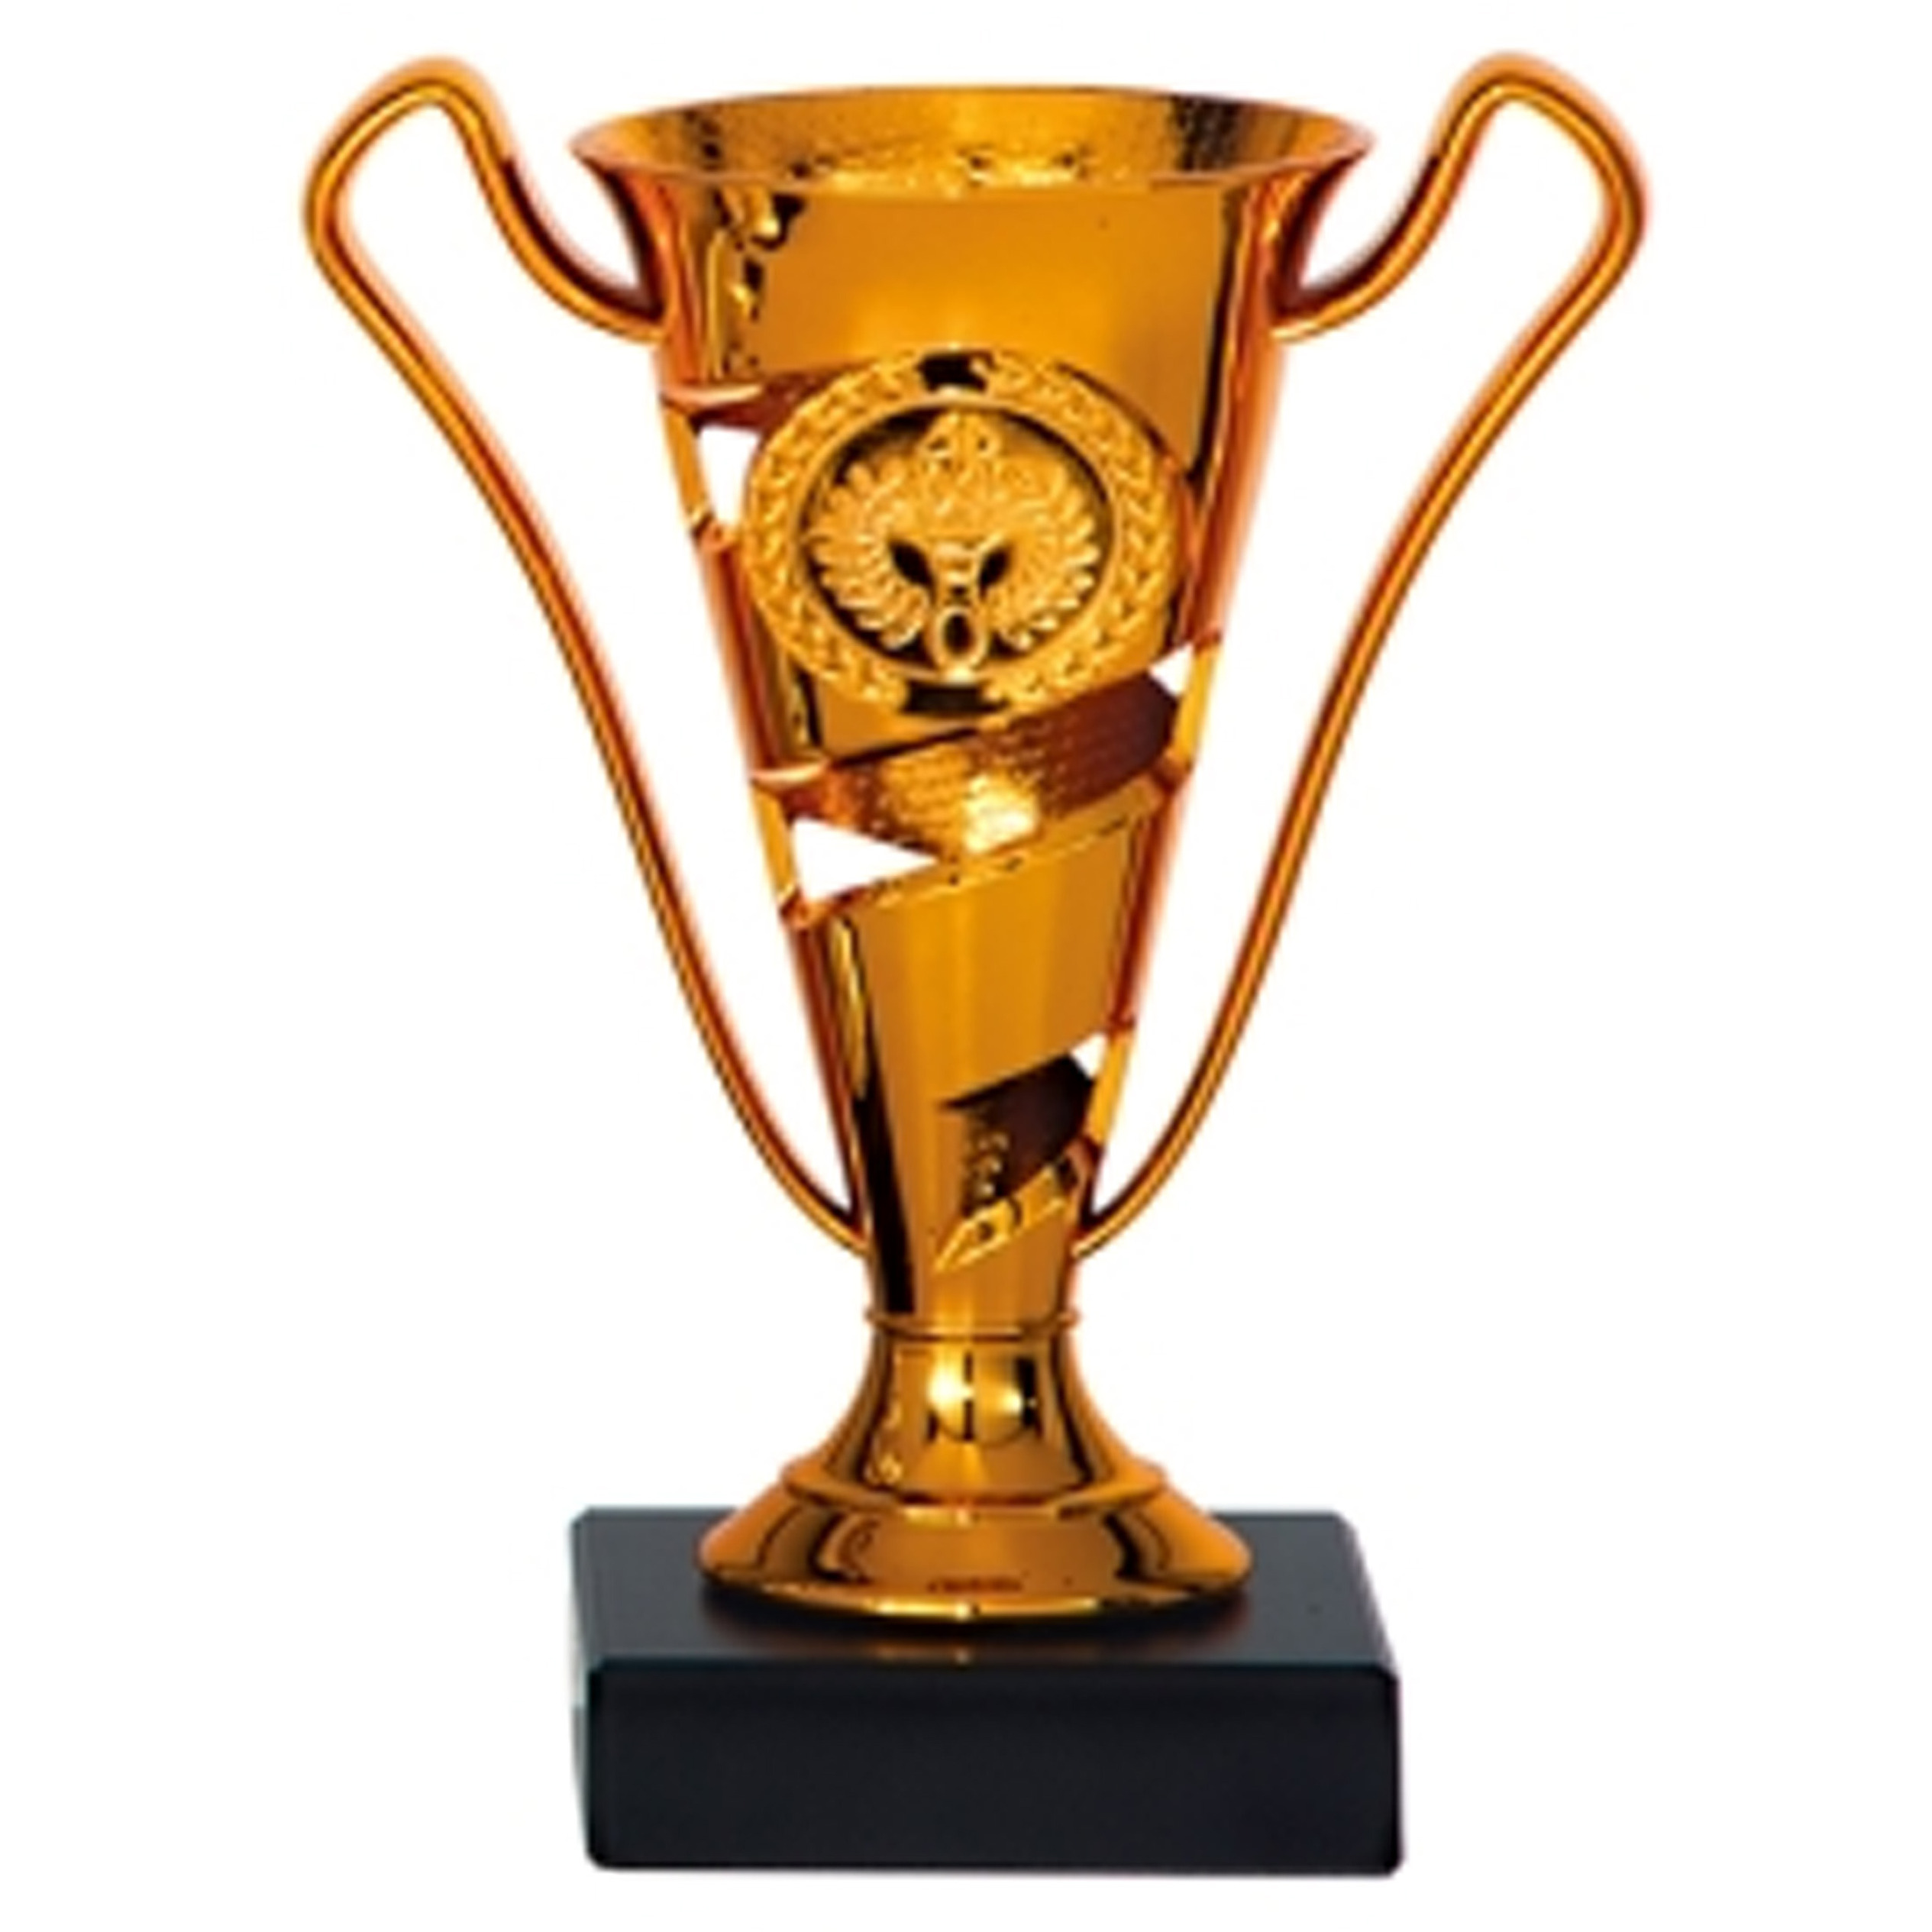 Luxe trofee-prijs beker met oren brons kunststof 17 x 11 cm sportprijs